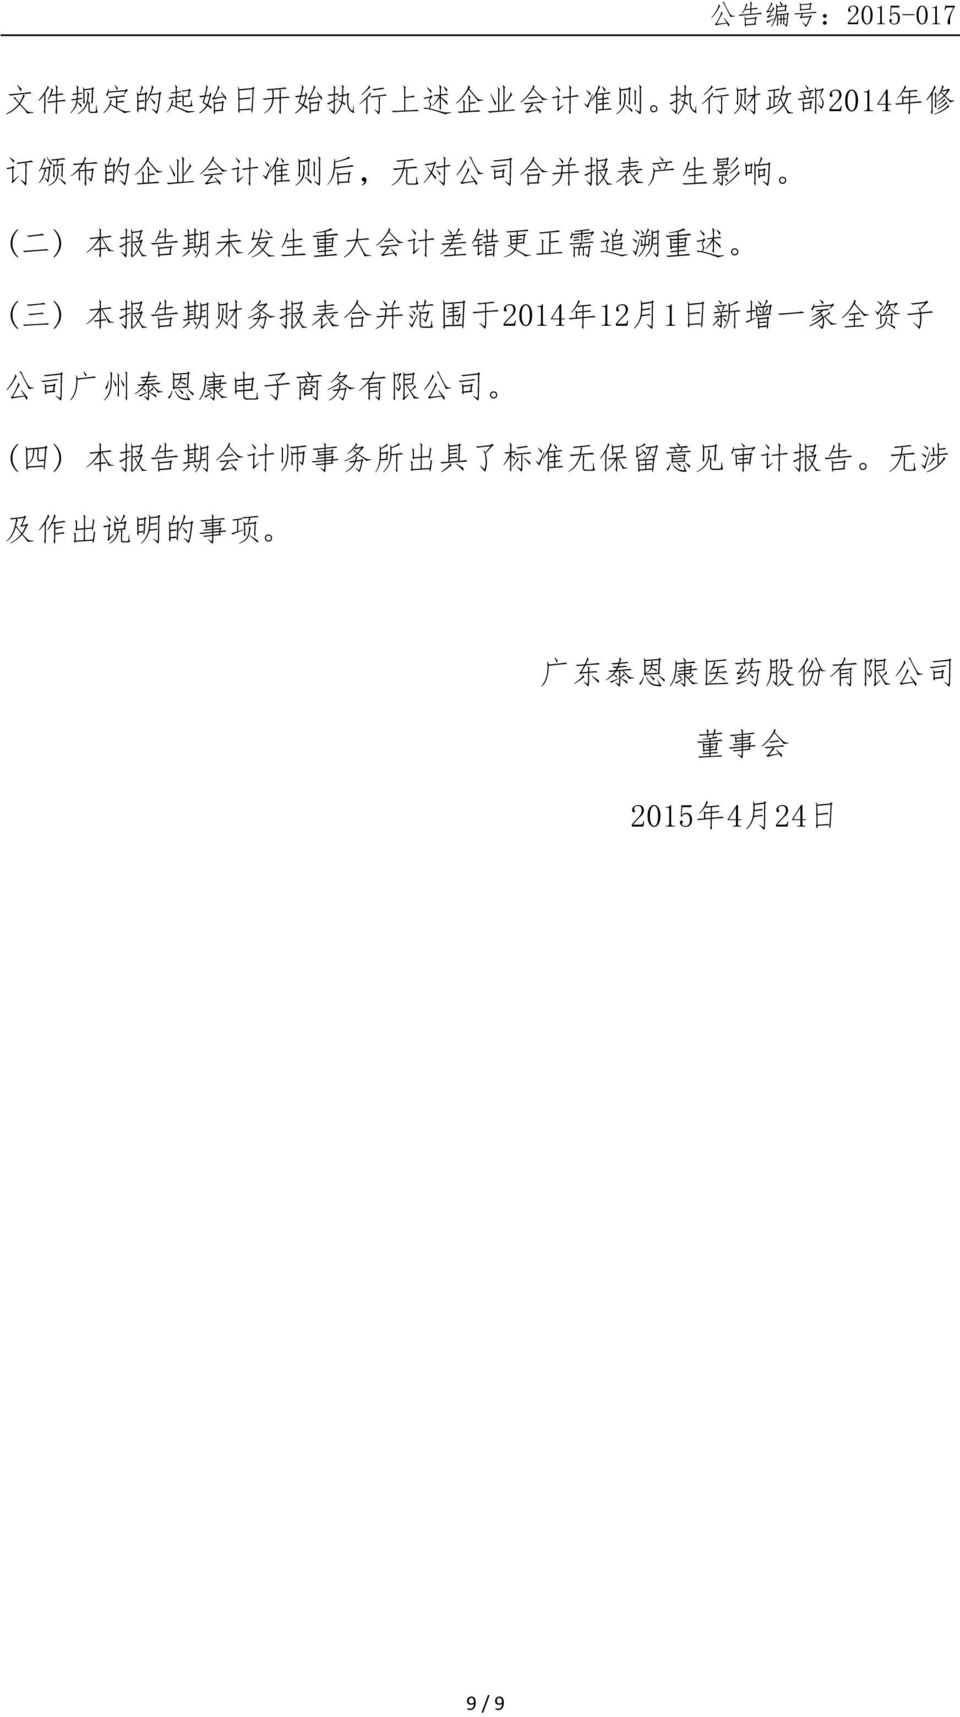 2014 年 12 月 1 日 新 增 一 家 全 资 子 公 司 广 州 泰 恩 康 电 子 商 务 有 限 公 司 ( 四 ) 本 报 告 期 会 计 师 事 务 所 出 具 了